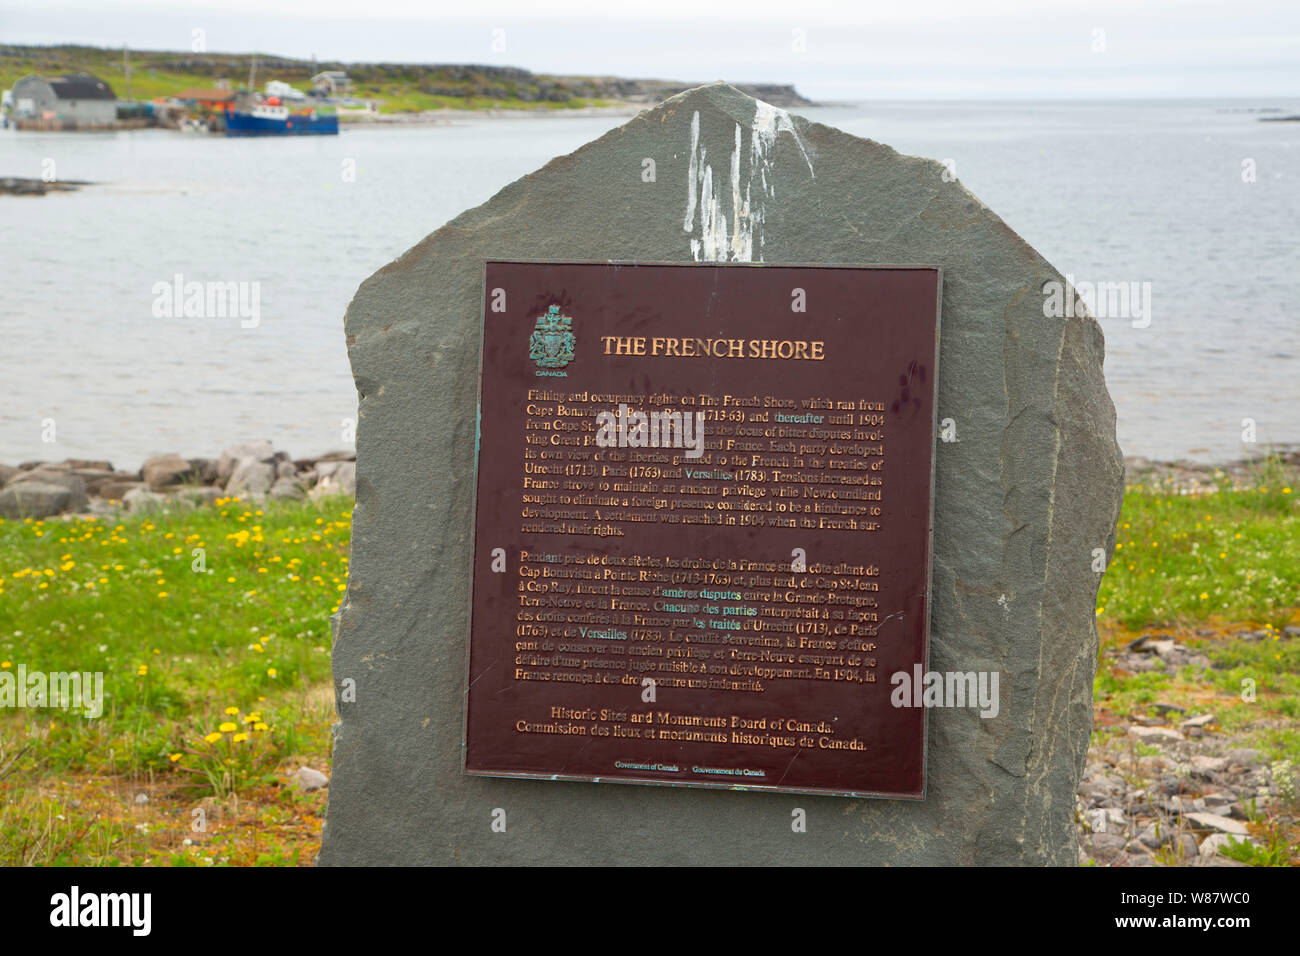 French Shore plaque, Port au Choix National Historic Site, Newfoundland and Labrador, Canada Stock Photo